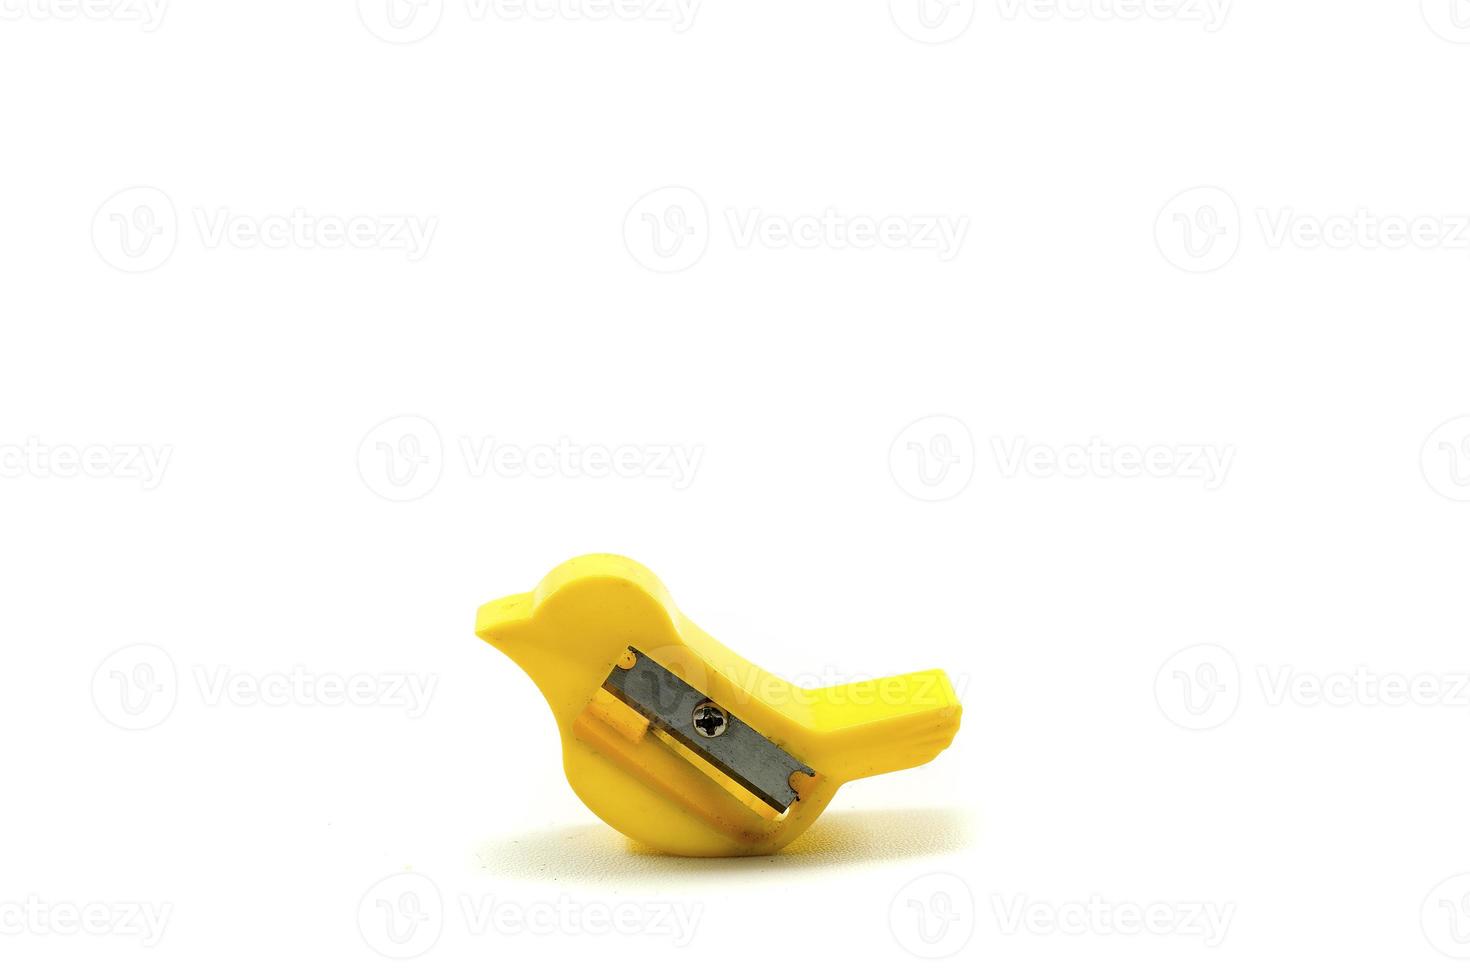 Einzigartiger gebrauchter gelber Bleistiftspitzer in Form eines Vogels isoliert auf Weiß foto